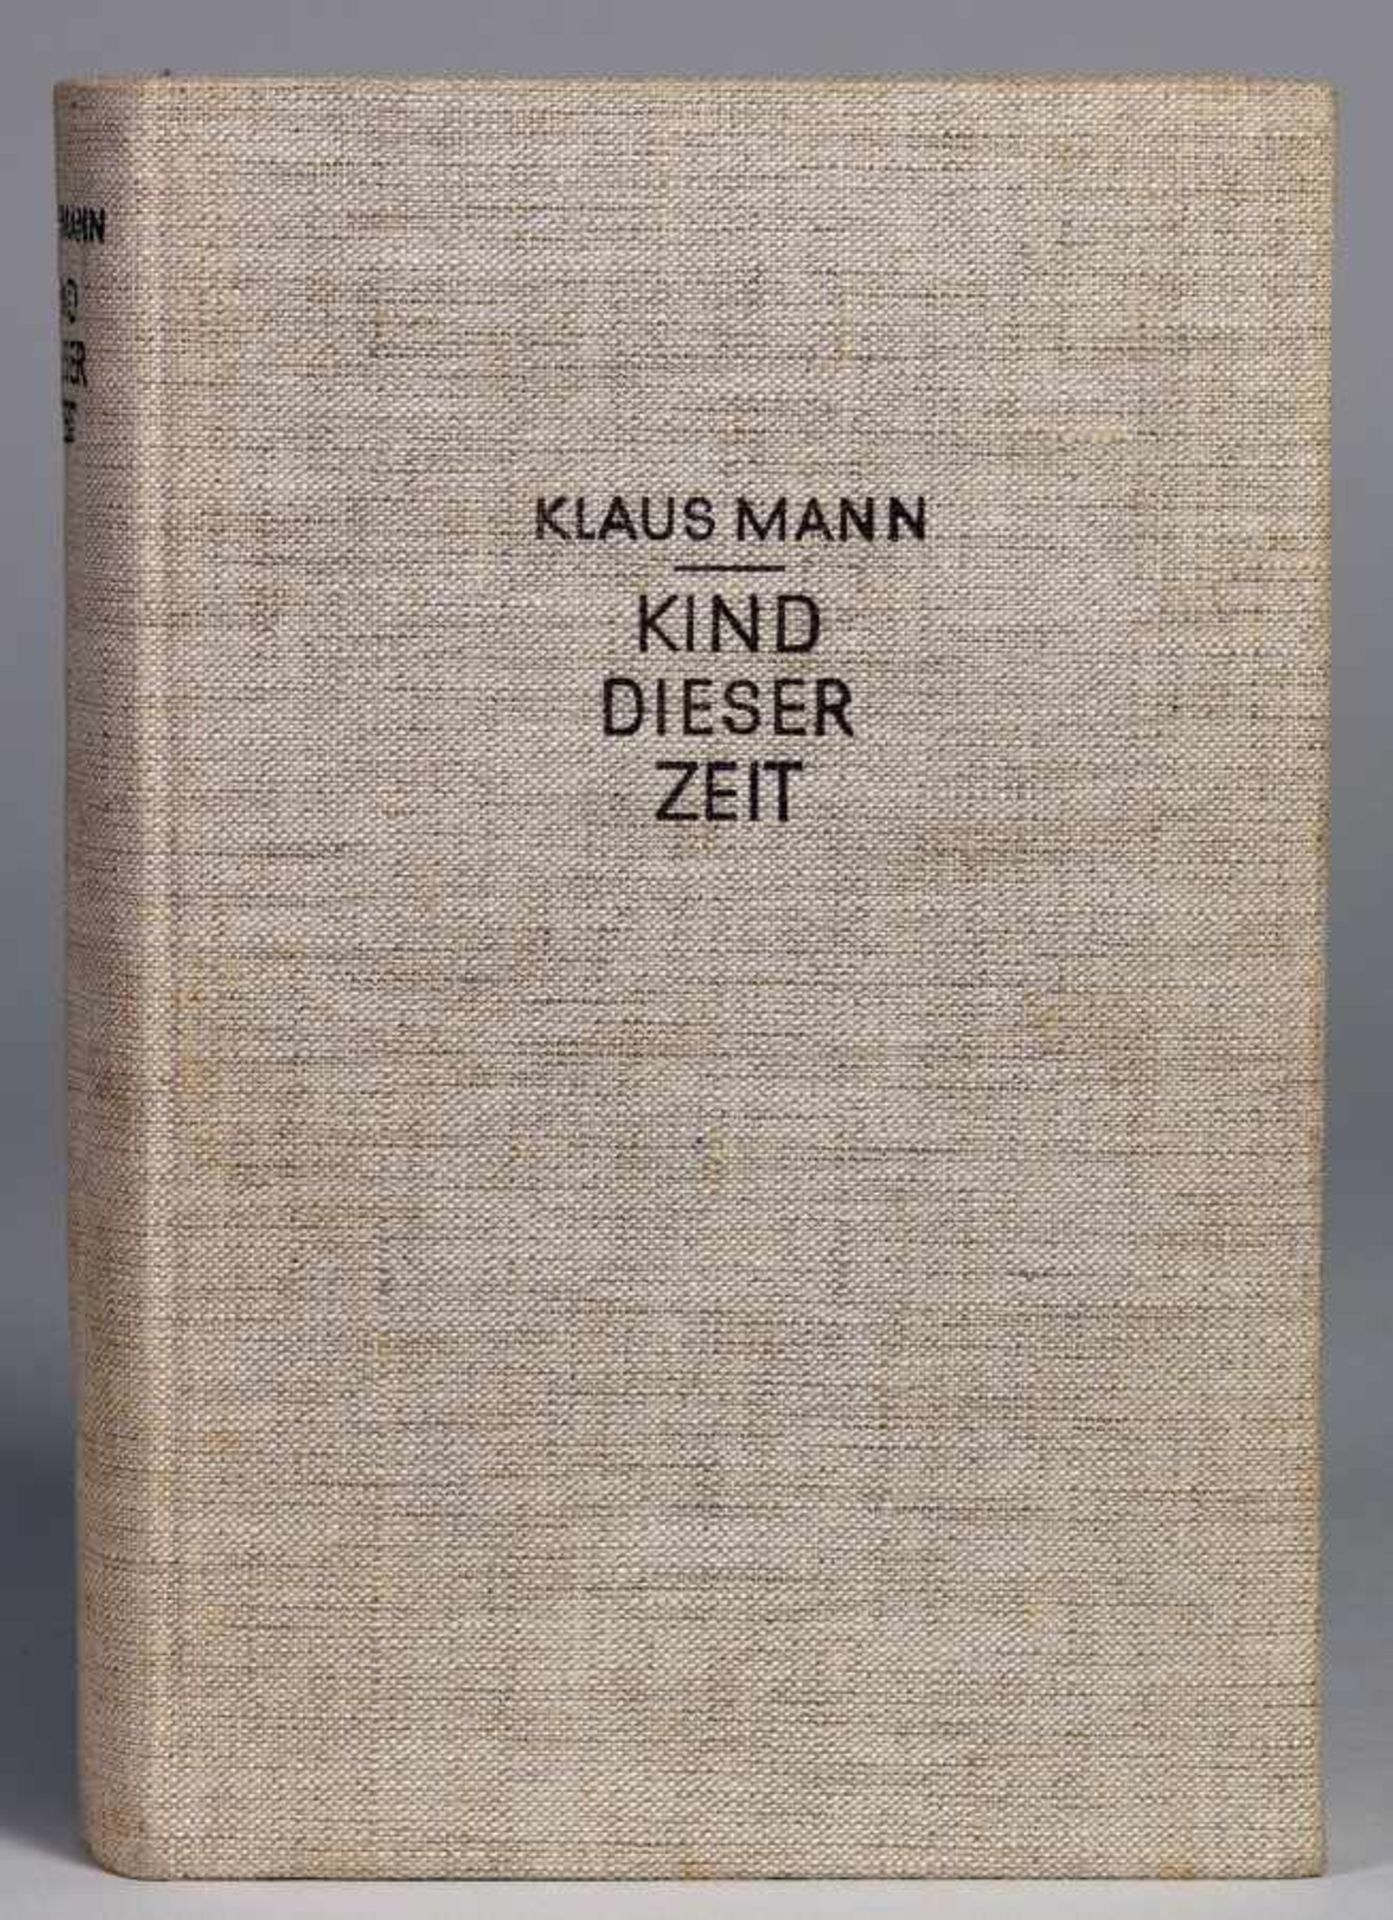 Klaus Mann. Auf der Suche nach einem Weg. - Kind dieser Zeit. Berlin, Transmare 1931 und 1932. - Image 2 of 2